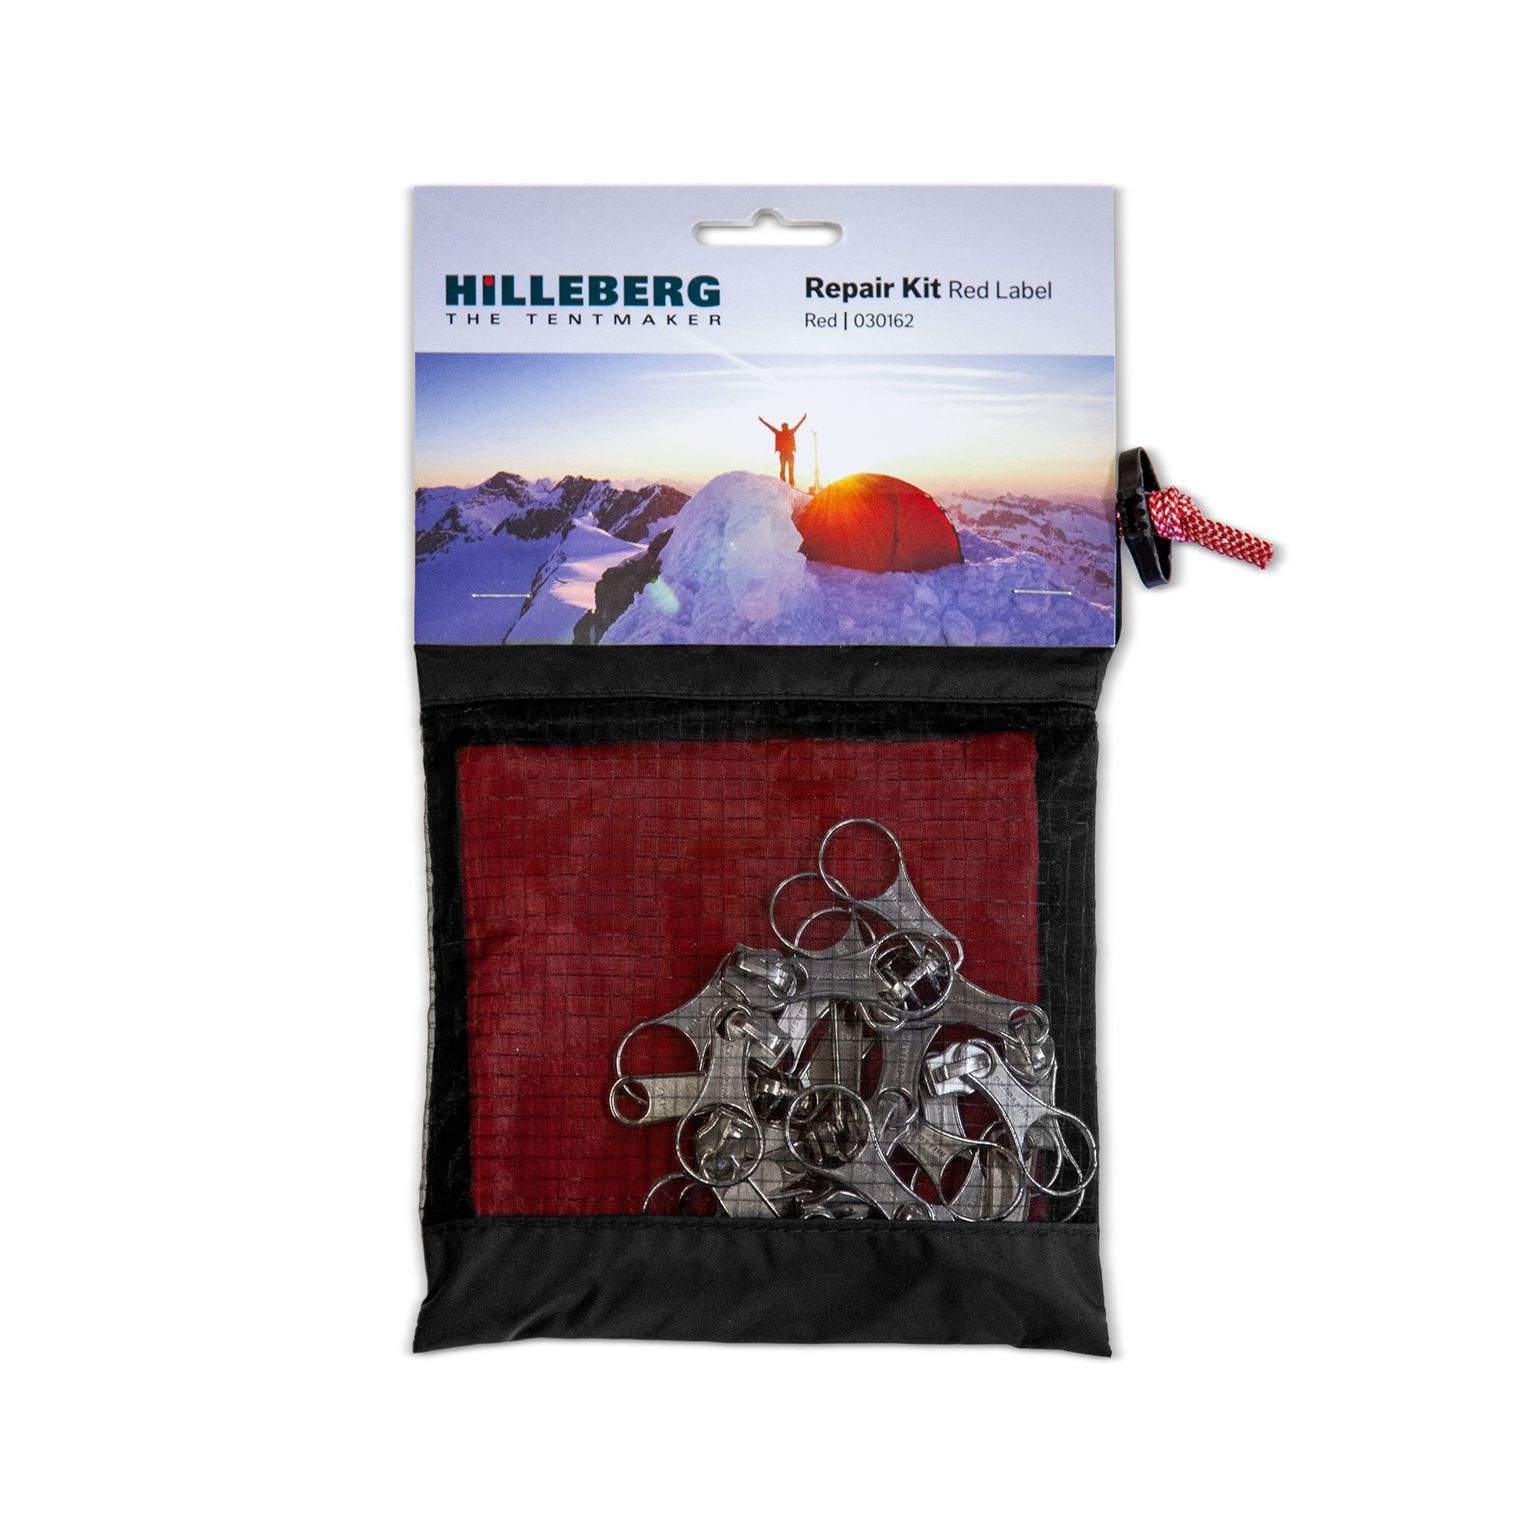 Hilleberg Repair Kit Red Label red